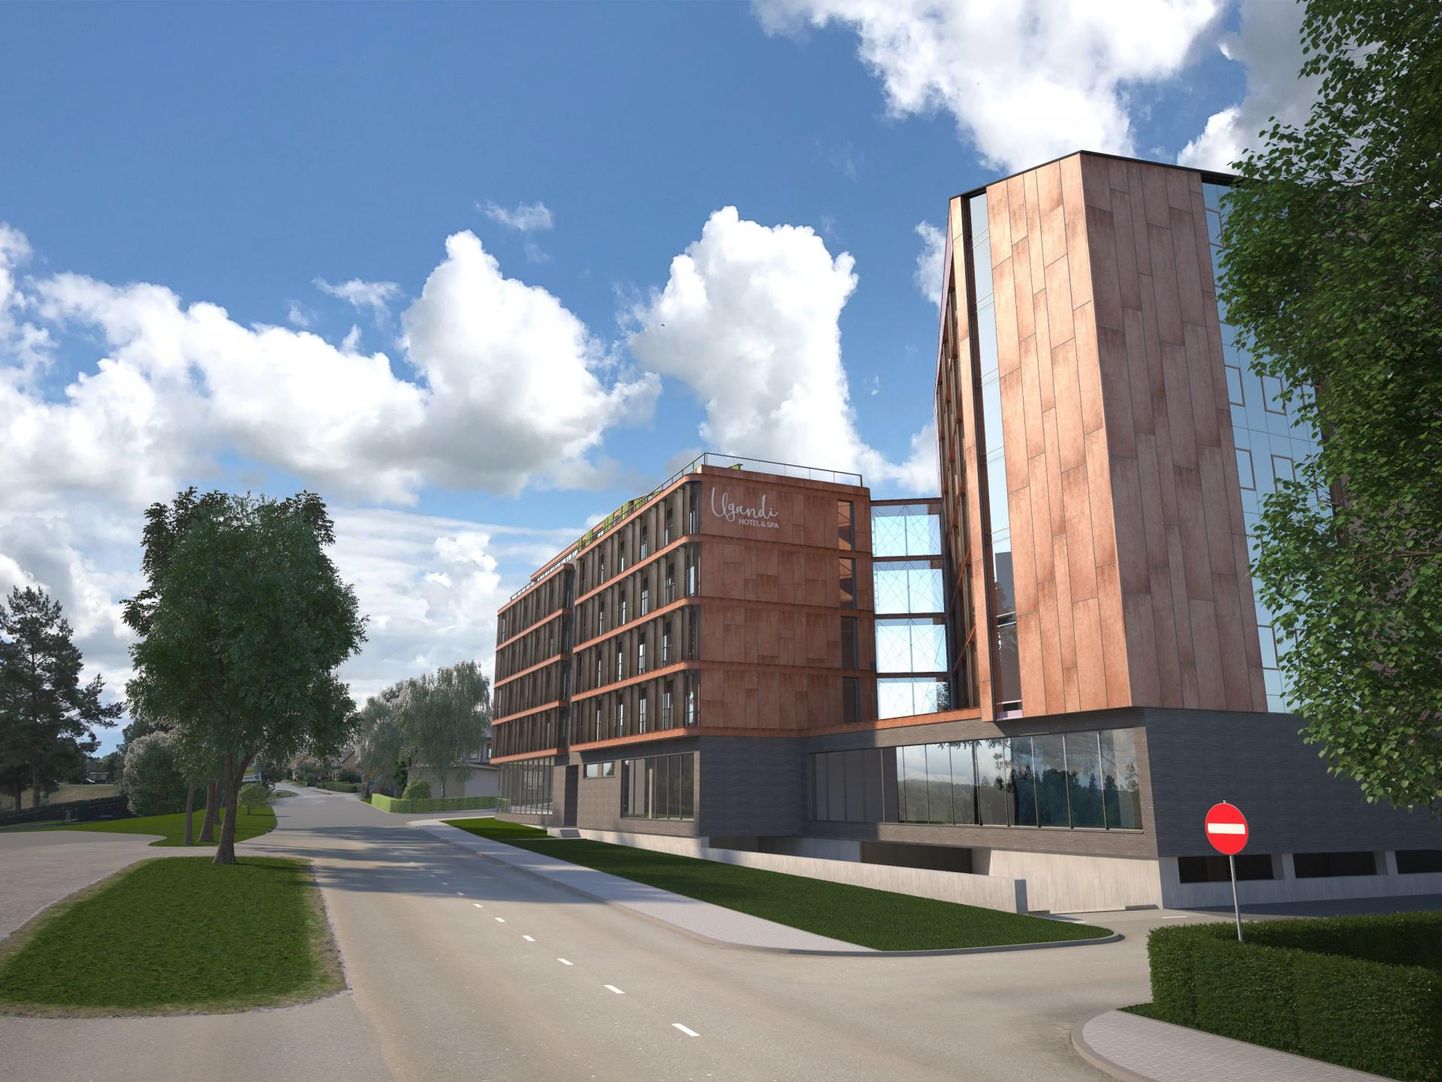 Säärane võib tulevikus välja näha spaahotell Otepää linnasüdames: Ugandi Capital OÜ lisatud 3D-joonis detailplaneeringu algatamise avaldusele. 